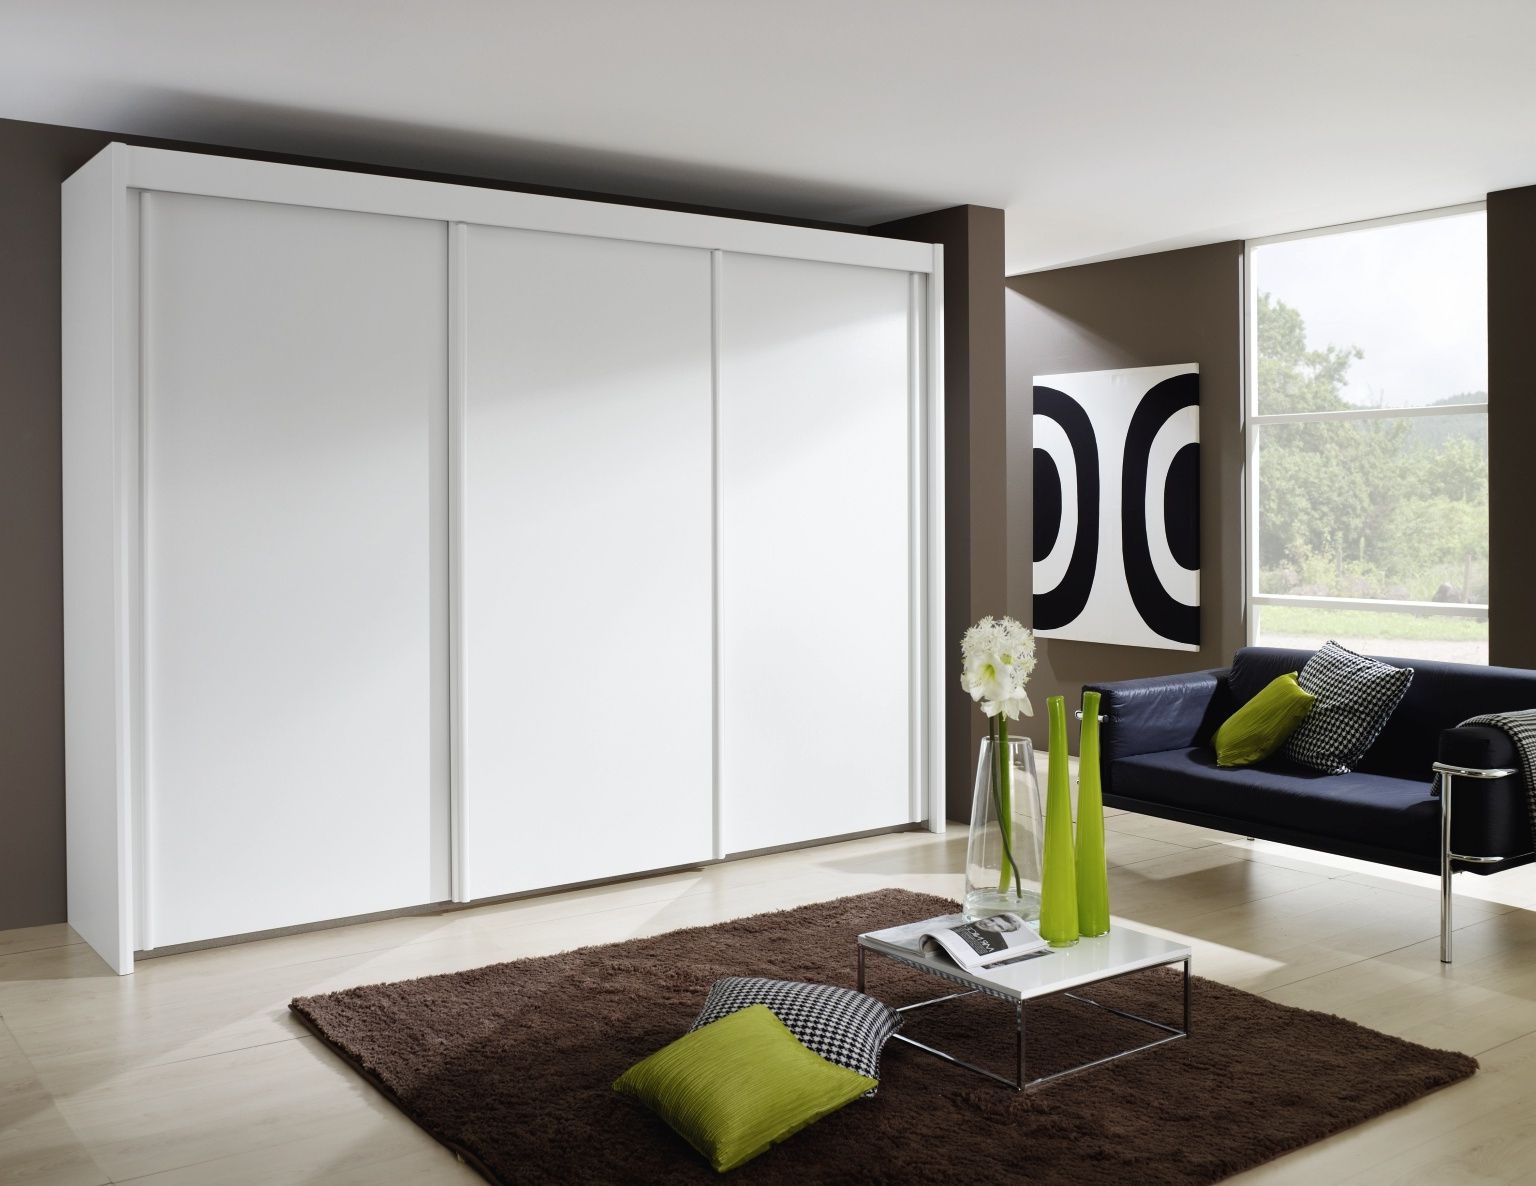 Rauch Imperial 3 Door Sliding Wardrobe In White – W 280cm – Cfs Furniture Uk Regarding Rauch Wardrobes (Gallery 17 of 20)